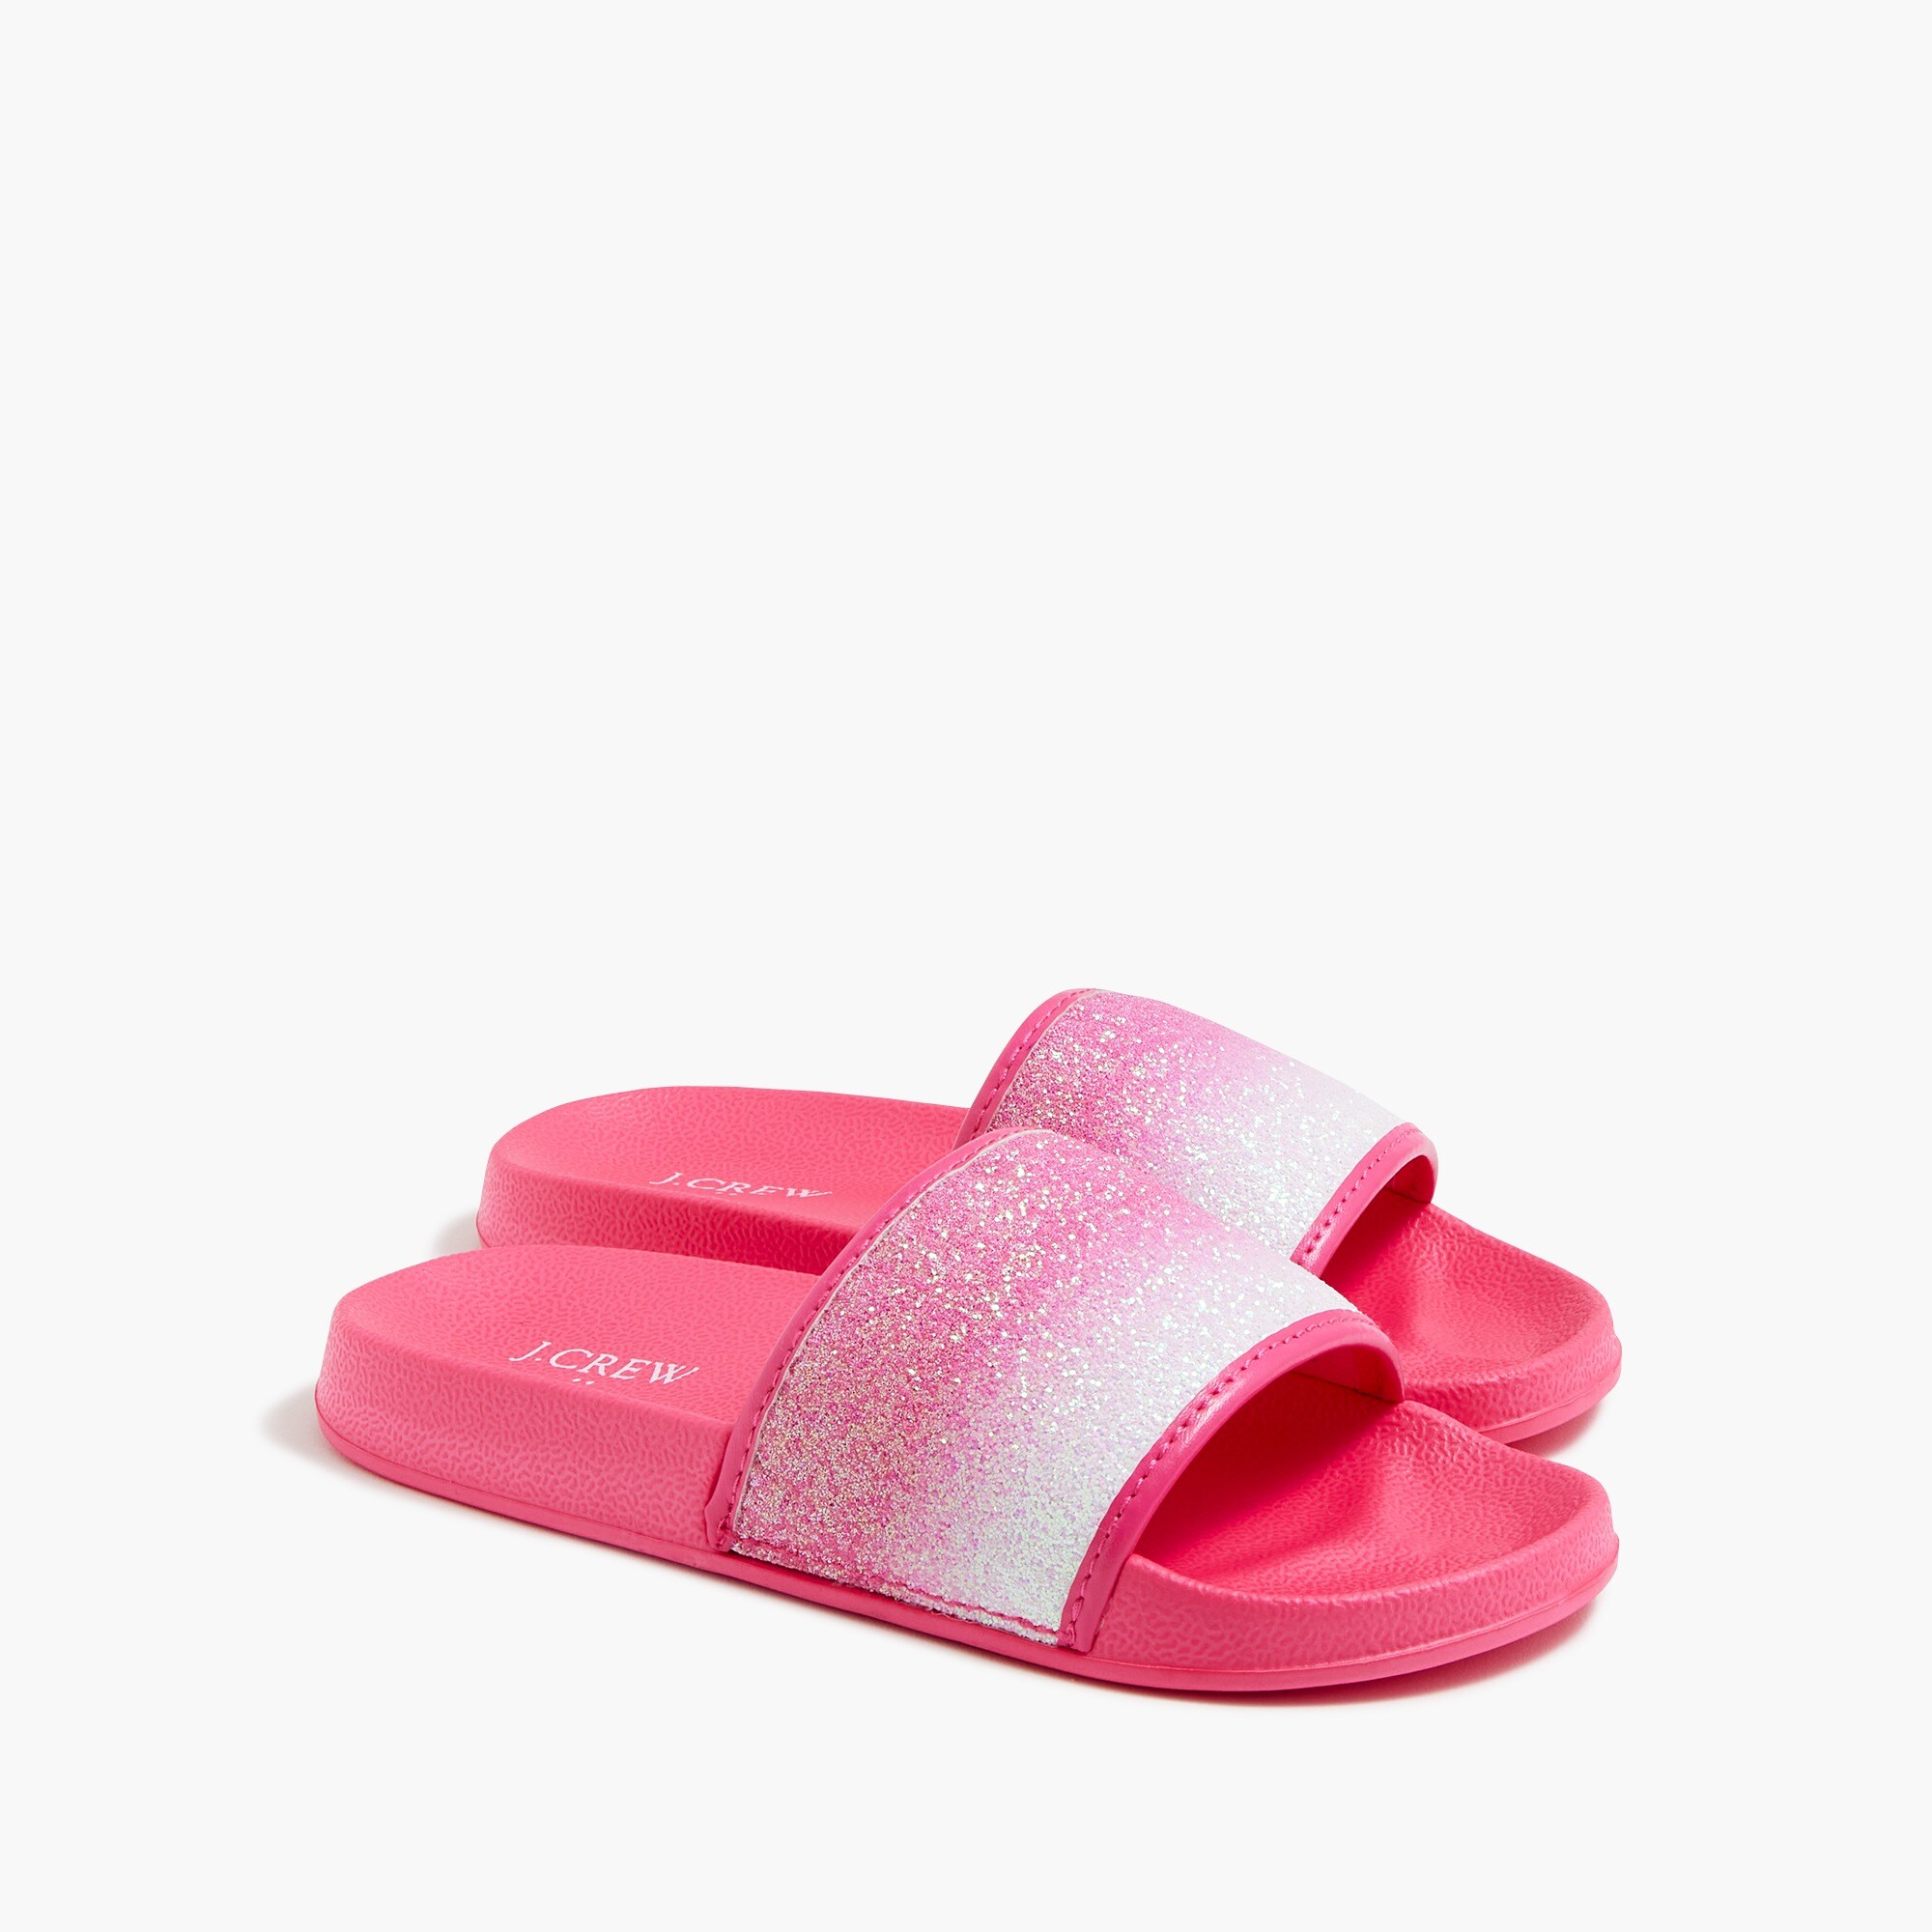  Girls' ombr&eacute; glitter slide sandals